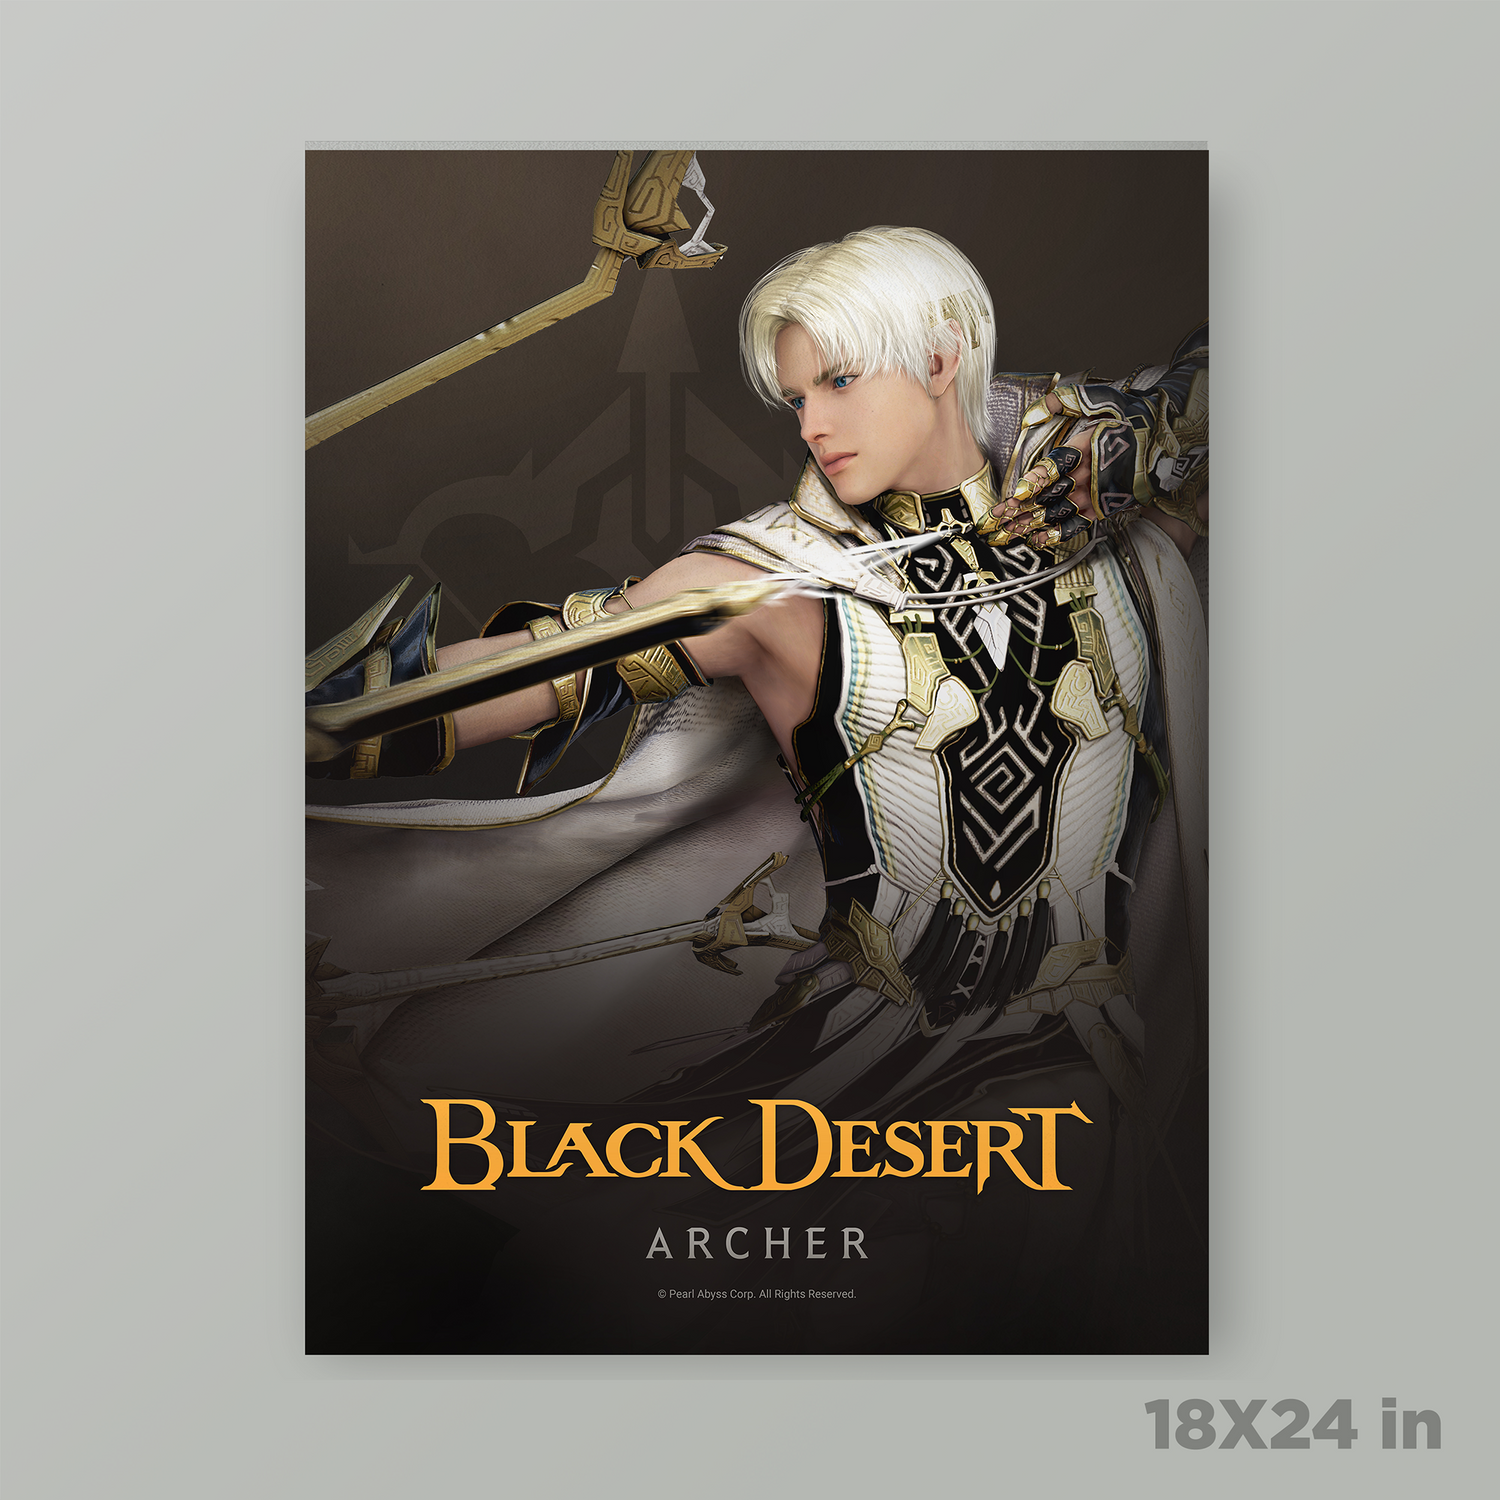 Black Desert Archer Poster